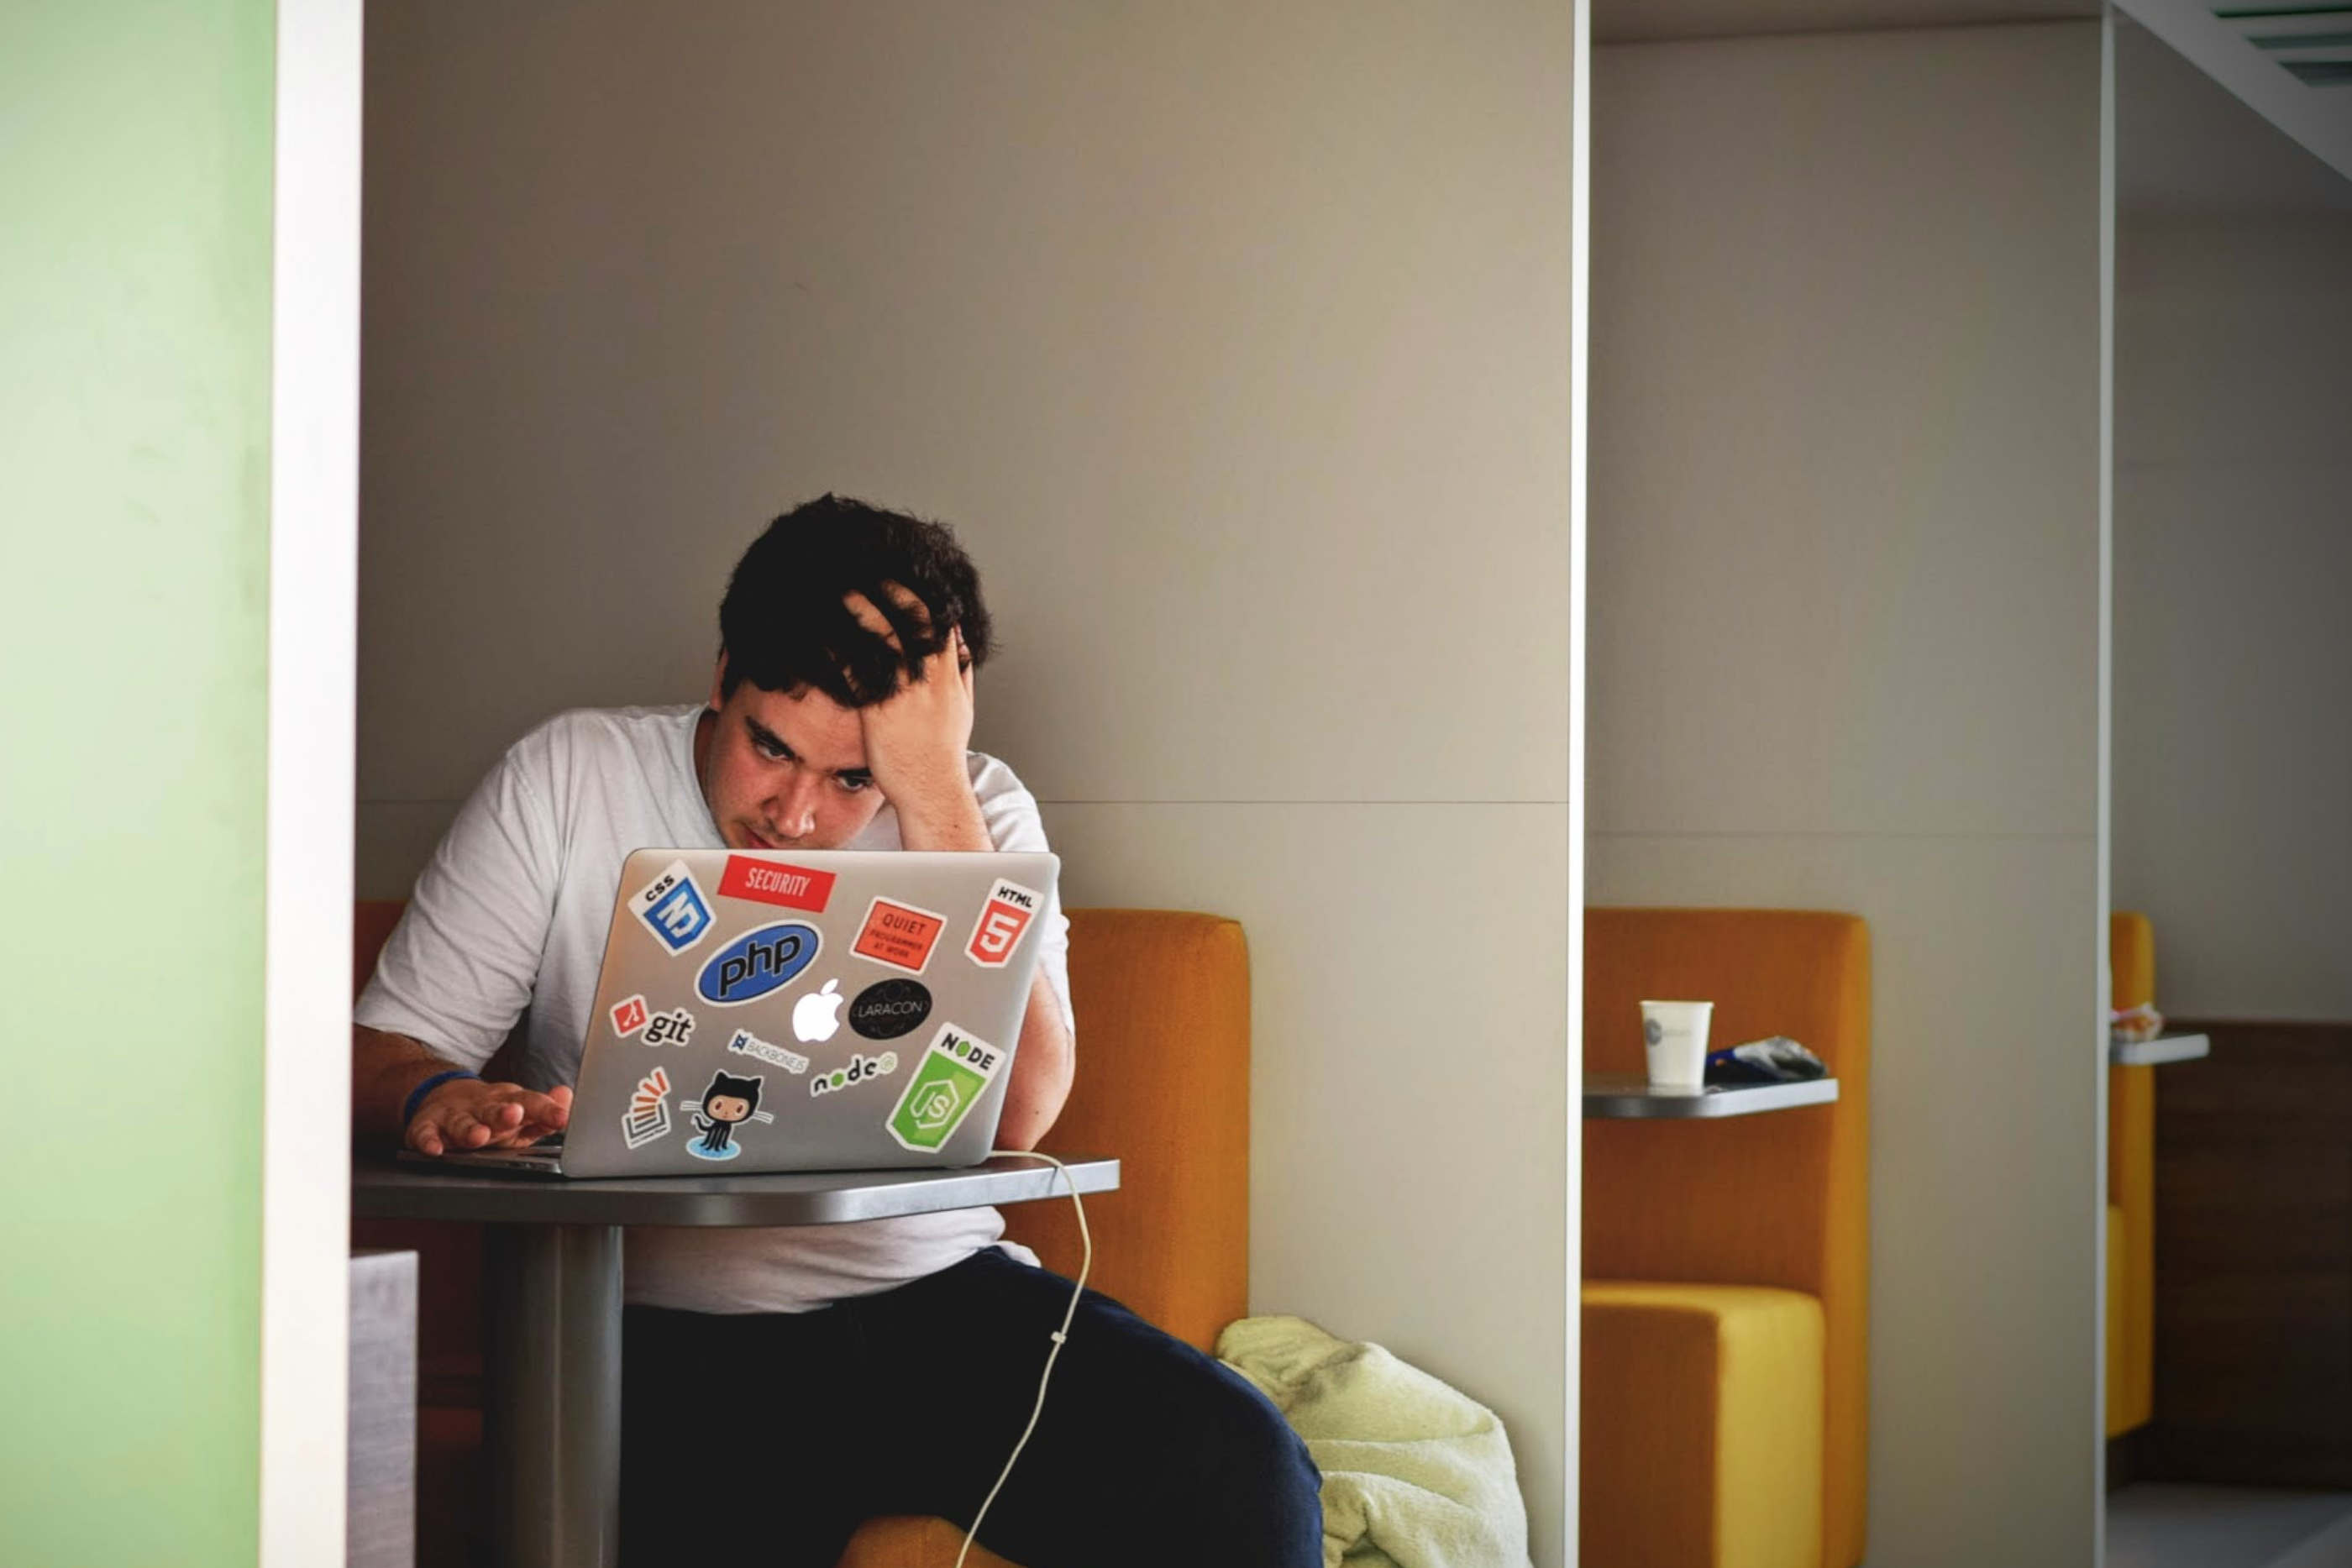 Rapaz sentado em frente ao computador, com a mão na cabeça, demonstrando algum stress e preocupação.